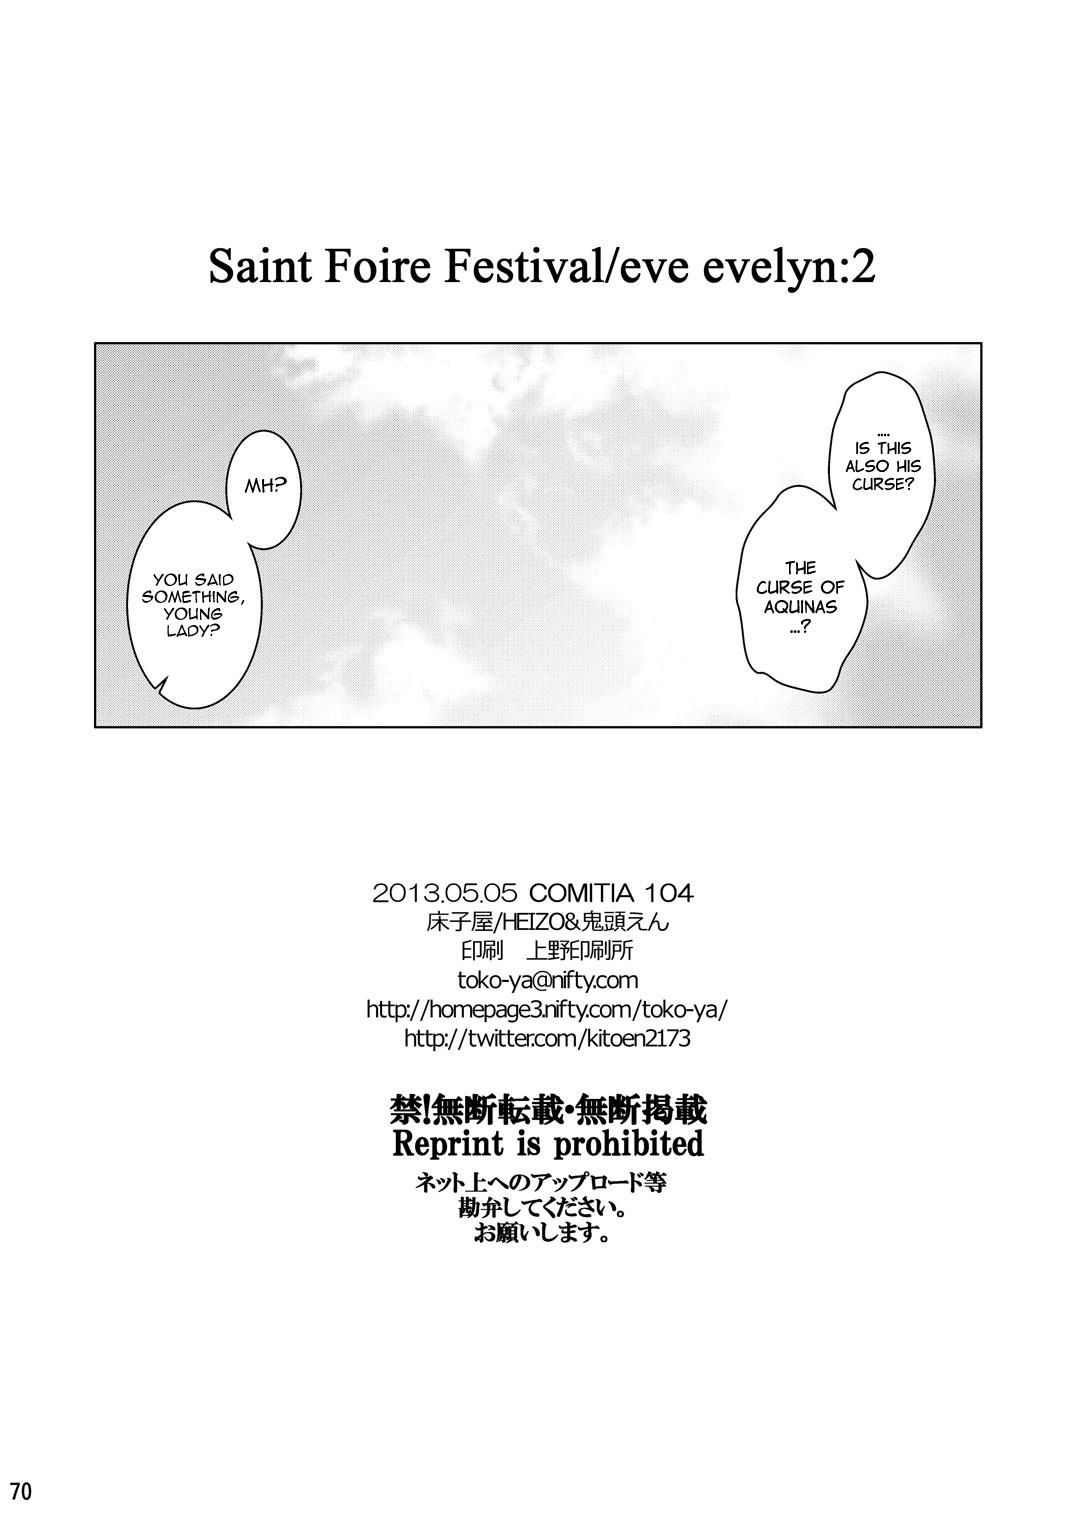 Saint Foire Festival/eve Evelyn:2 68